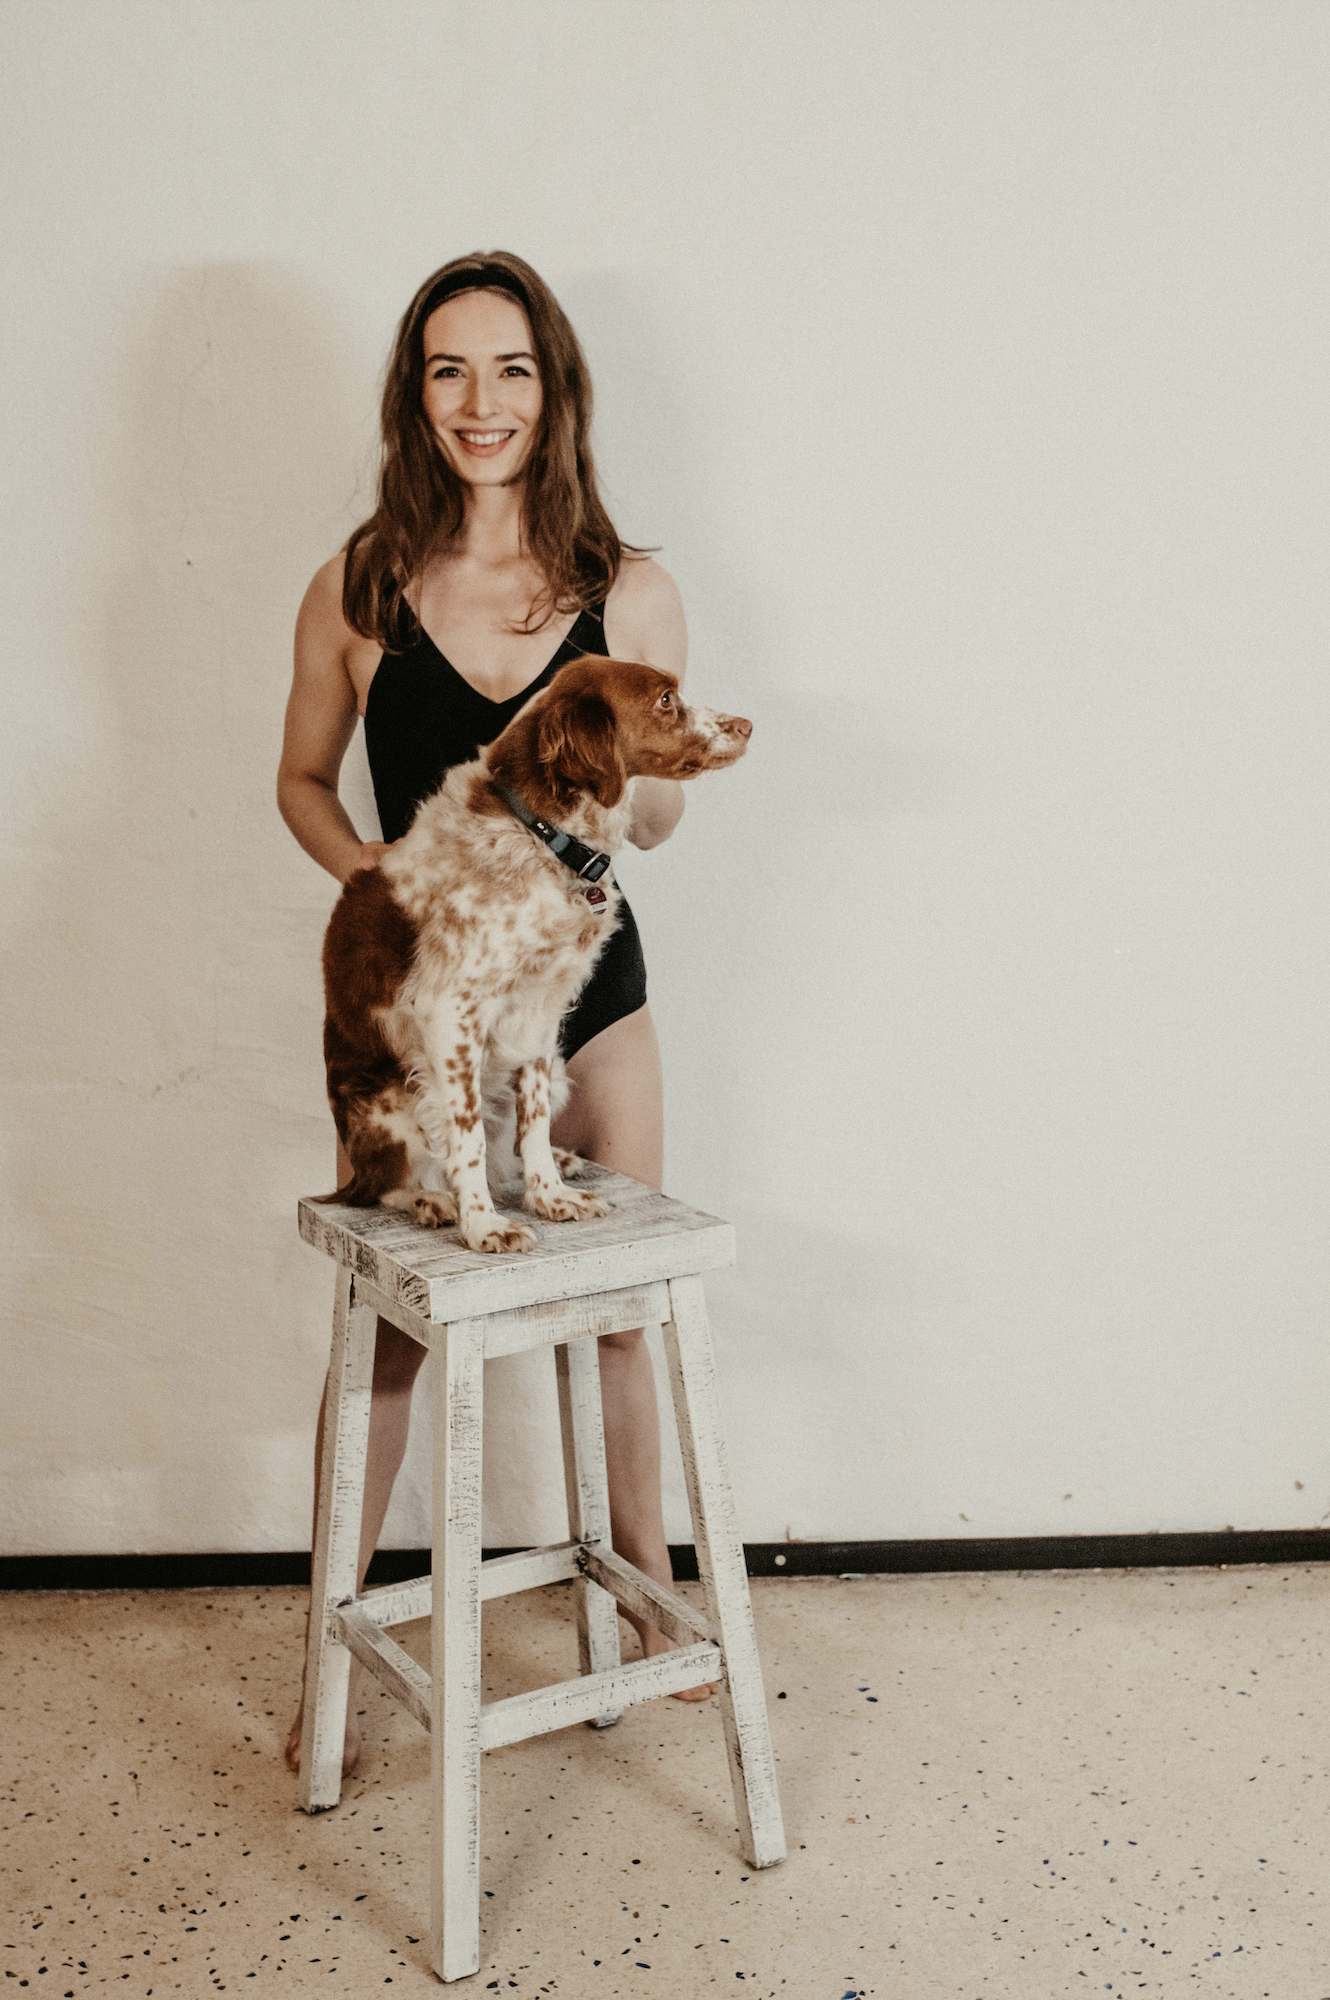 Paula Hauss: Frau posiert vor Wand mit Hund, der auf einem Hocker sitzt